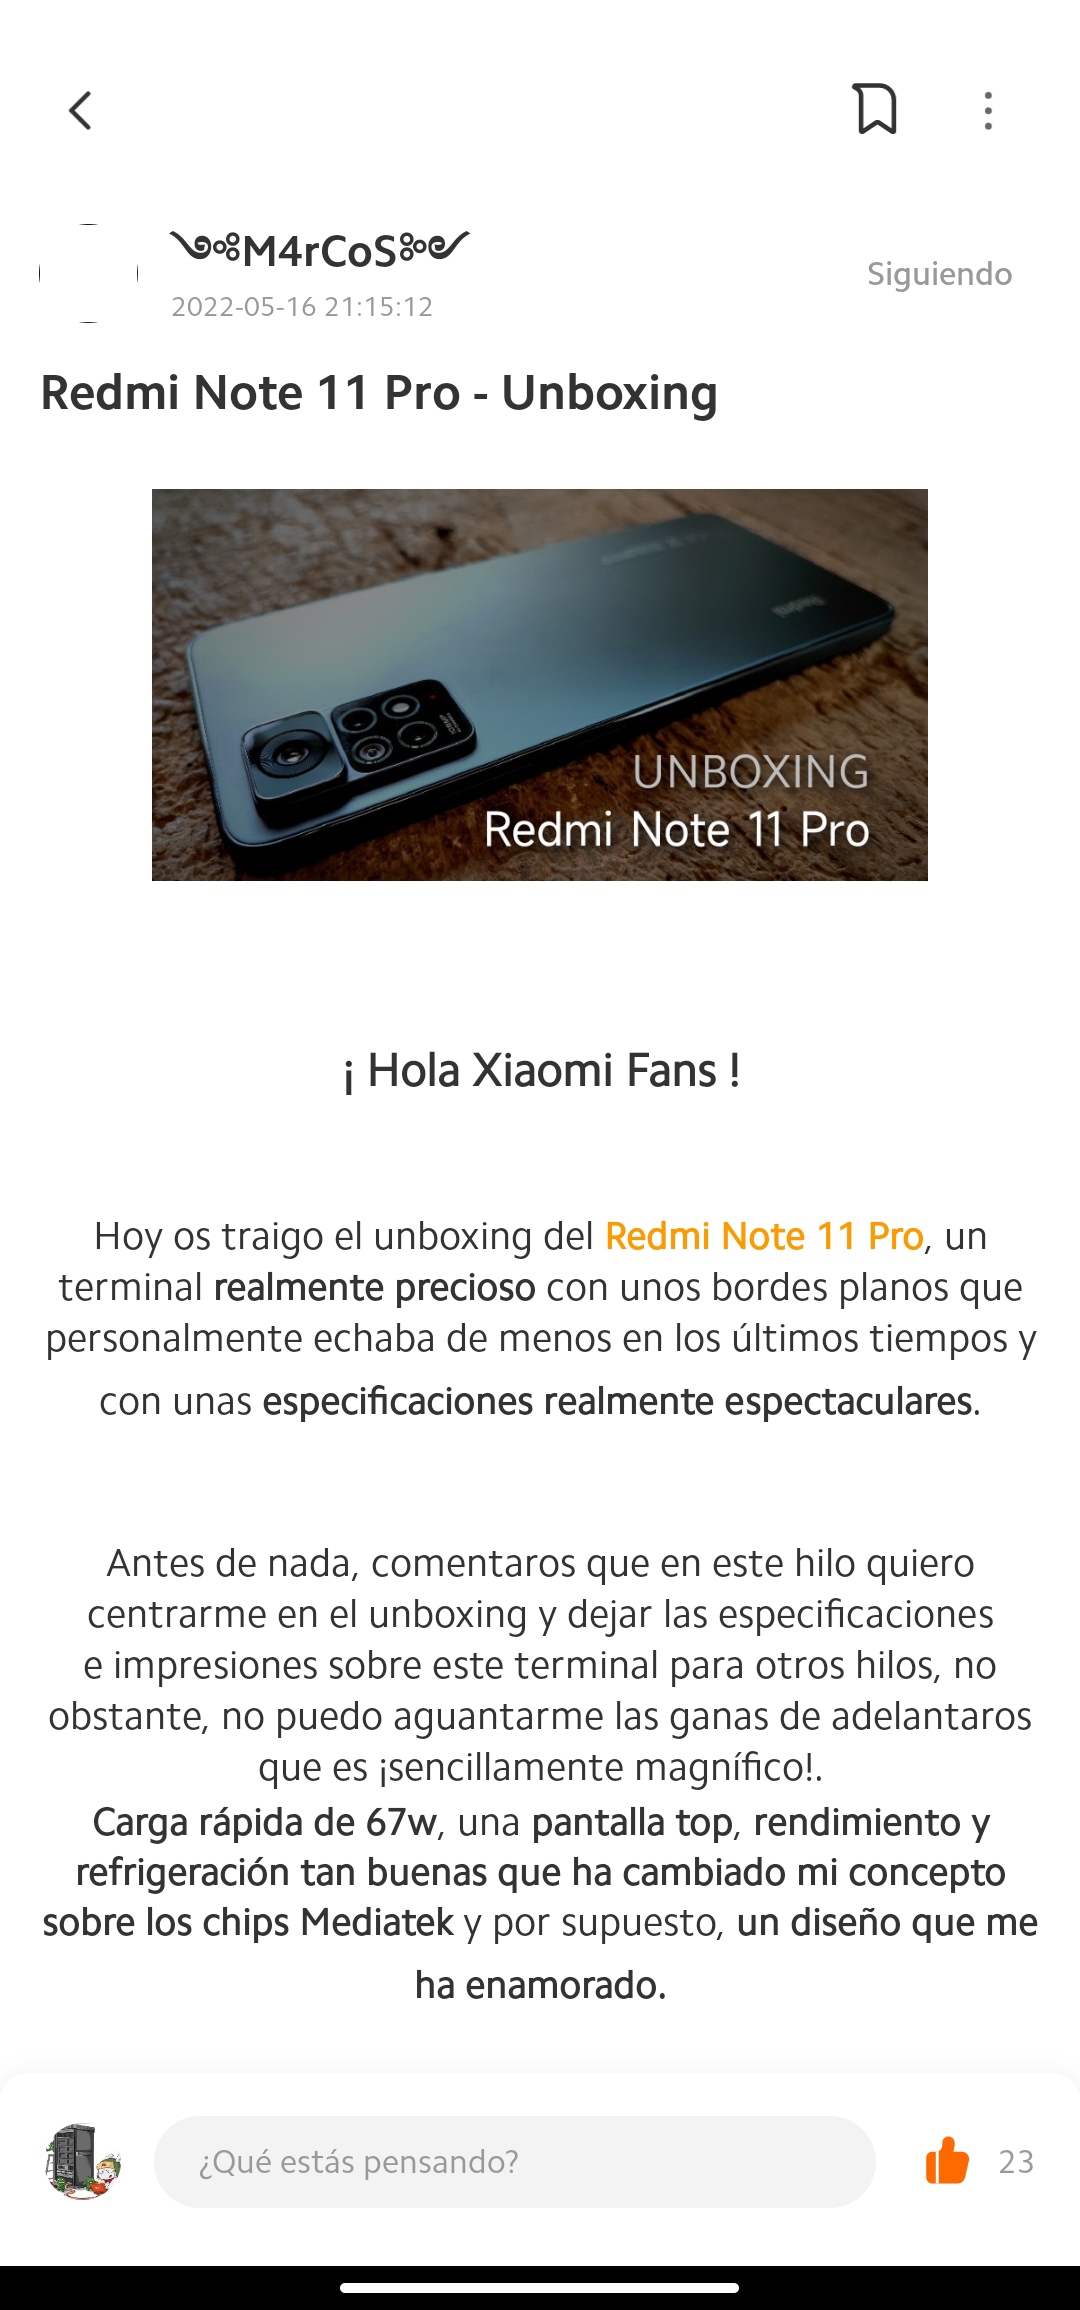 Mi experiencia con el Xiaomi Redmi Note 11 tras una semana de uso